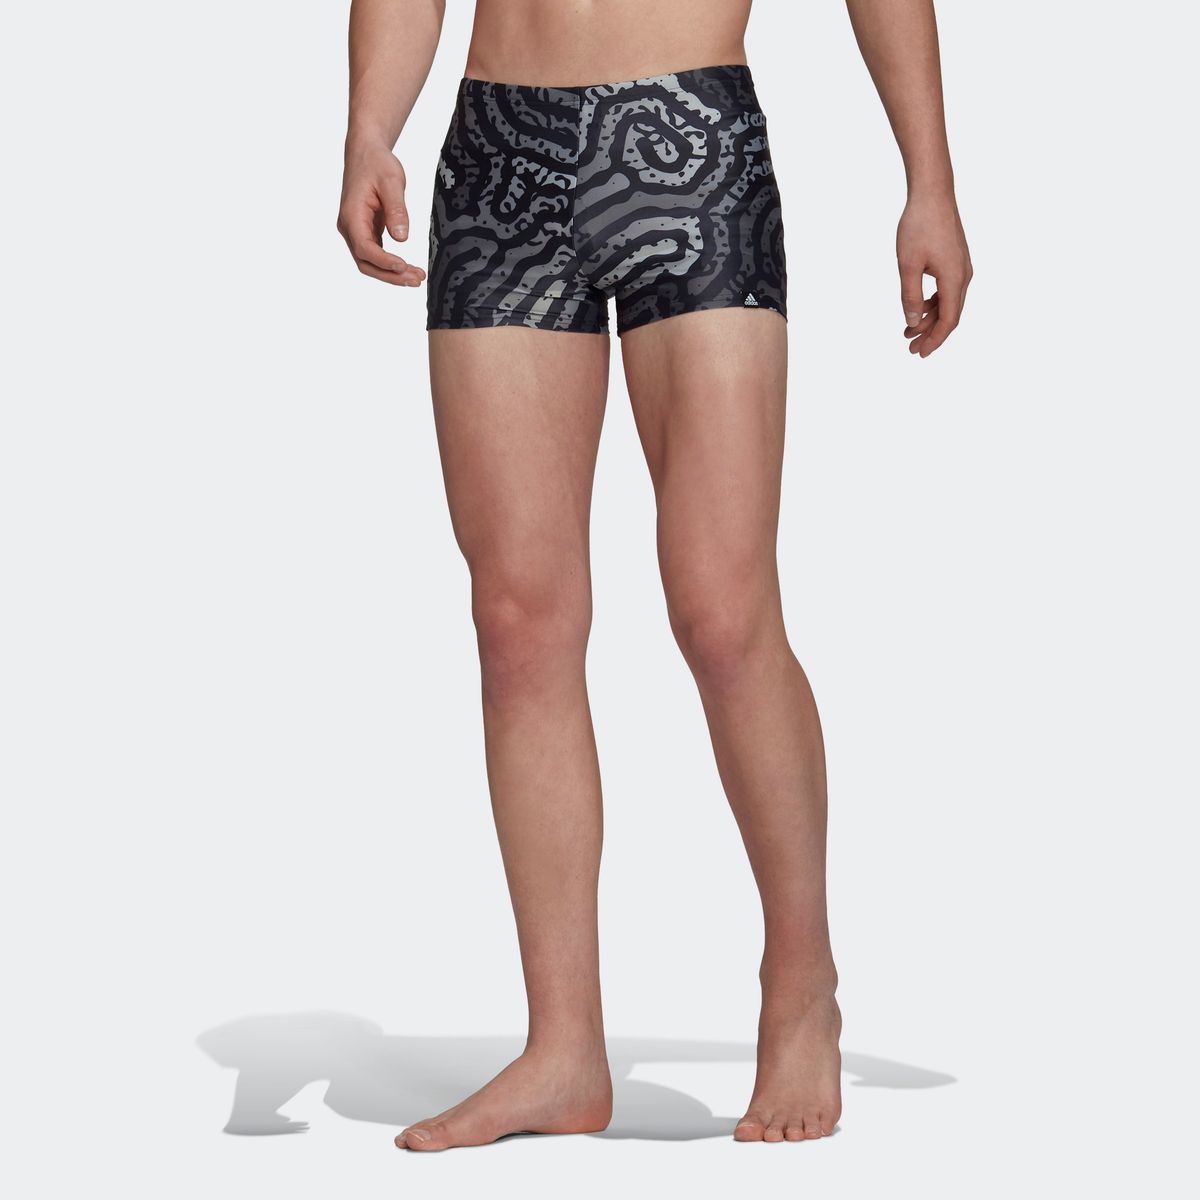 Shorts de Bain garçon Slips Séchage Rapide Maillot de Bain Homme 2020 Newest Créatif Sensible à la température Changer de Couleur Pantalon de Bain Short de Plage 8-15 Ans 